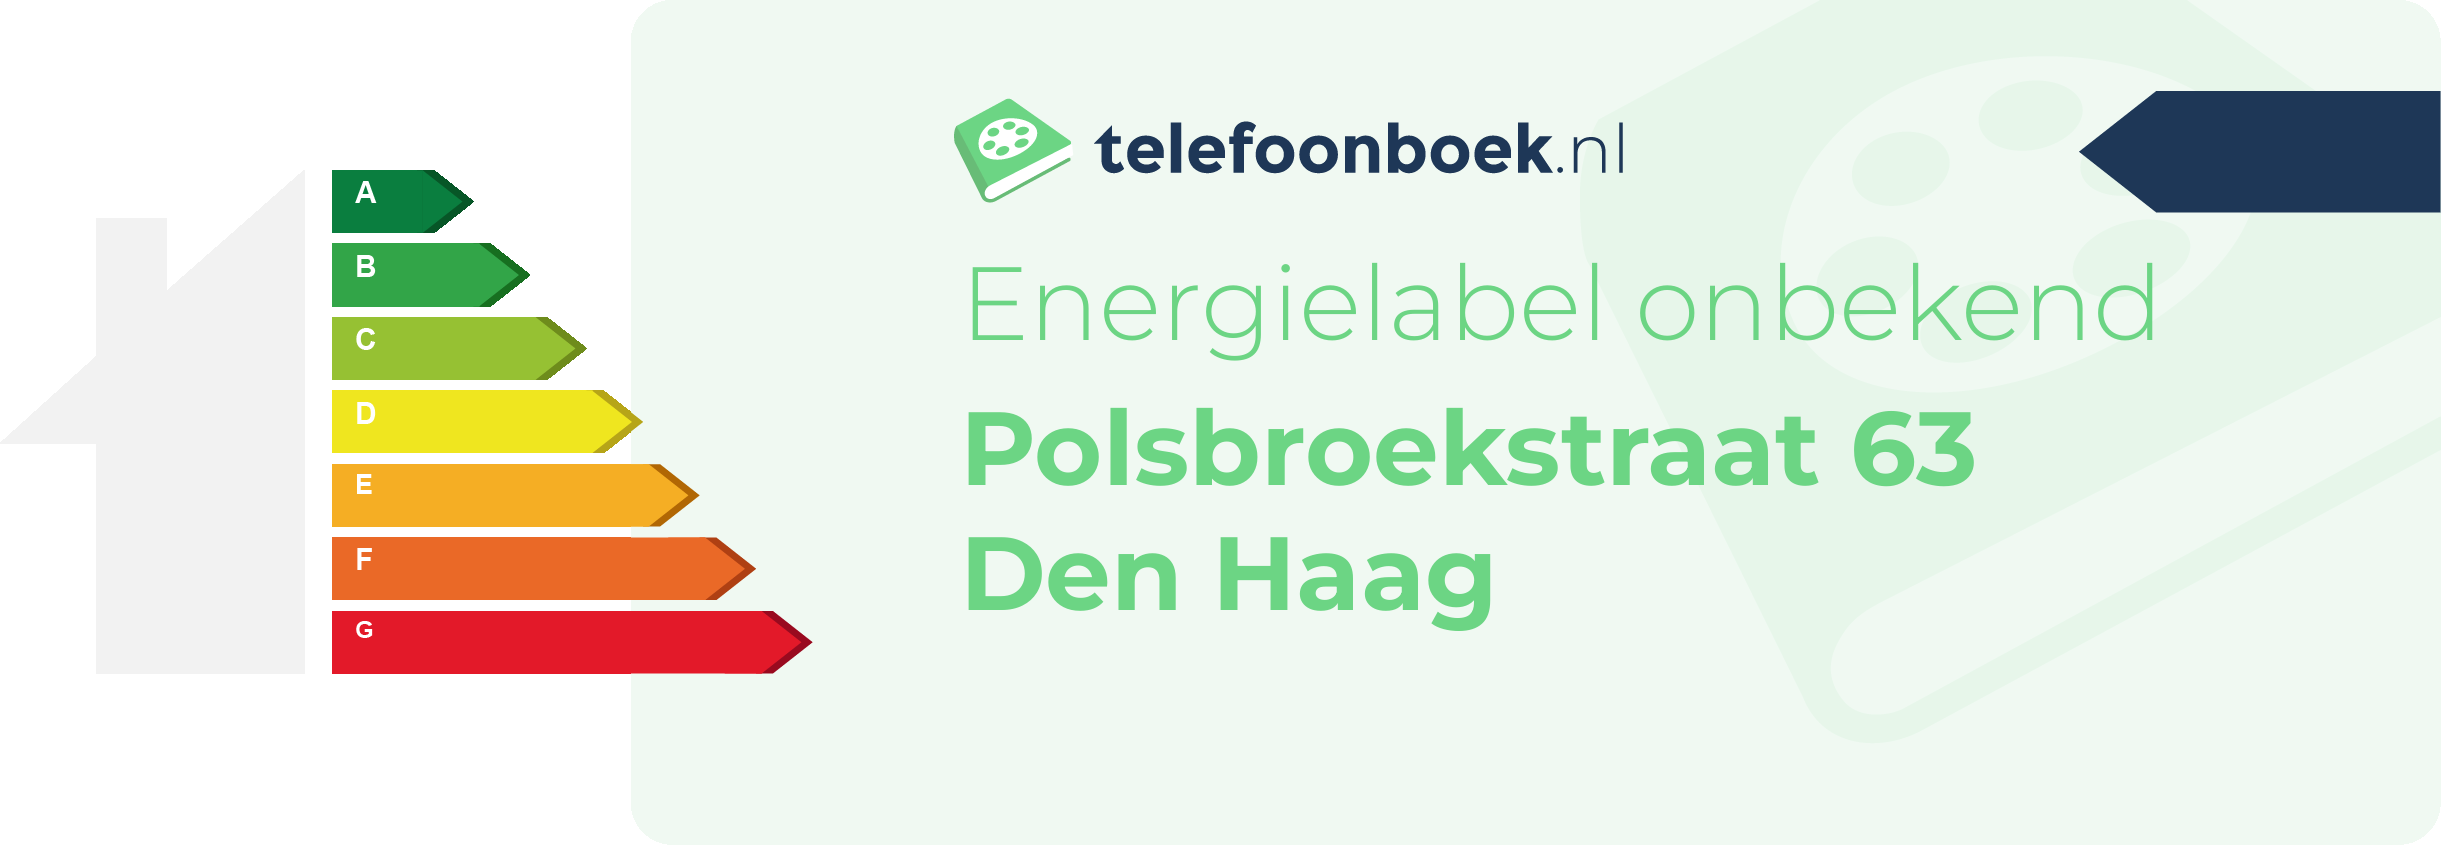 Energielabel Polsbroekstraat 63 Den Haag